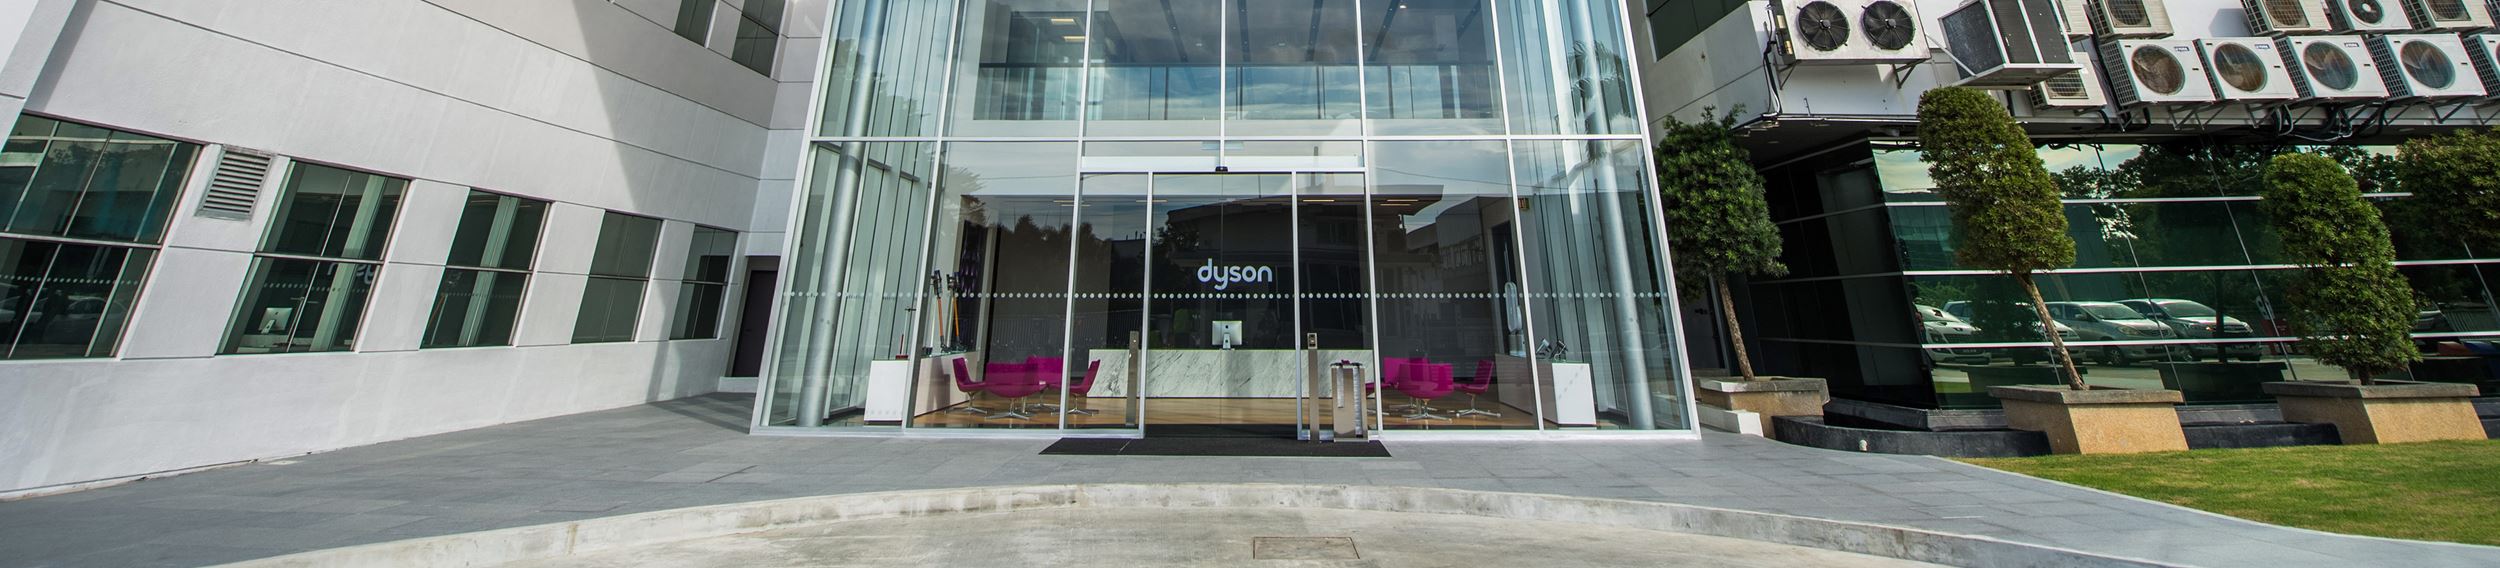 Dyson Malaysia office